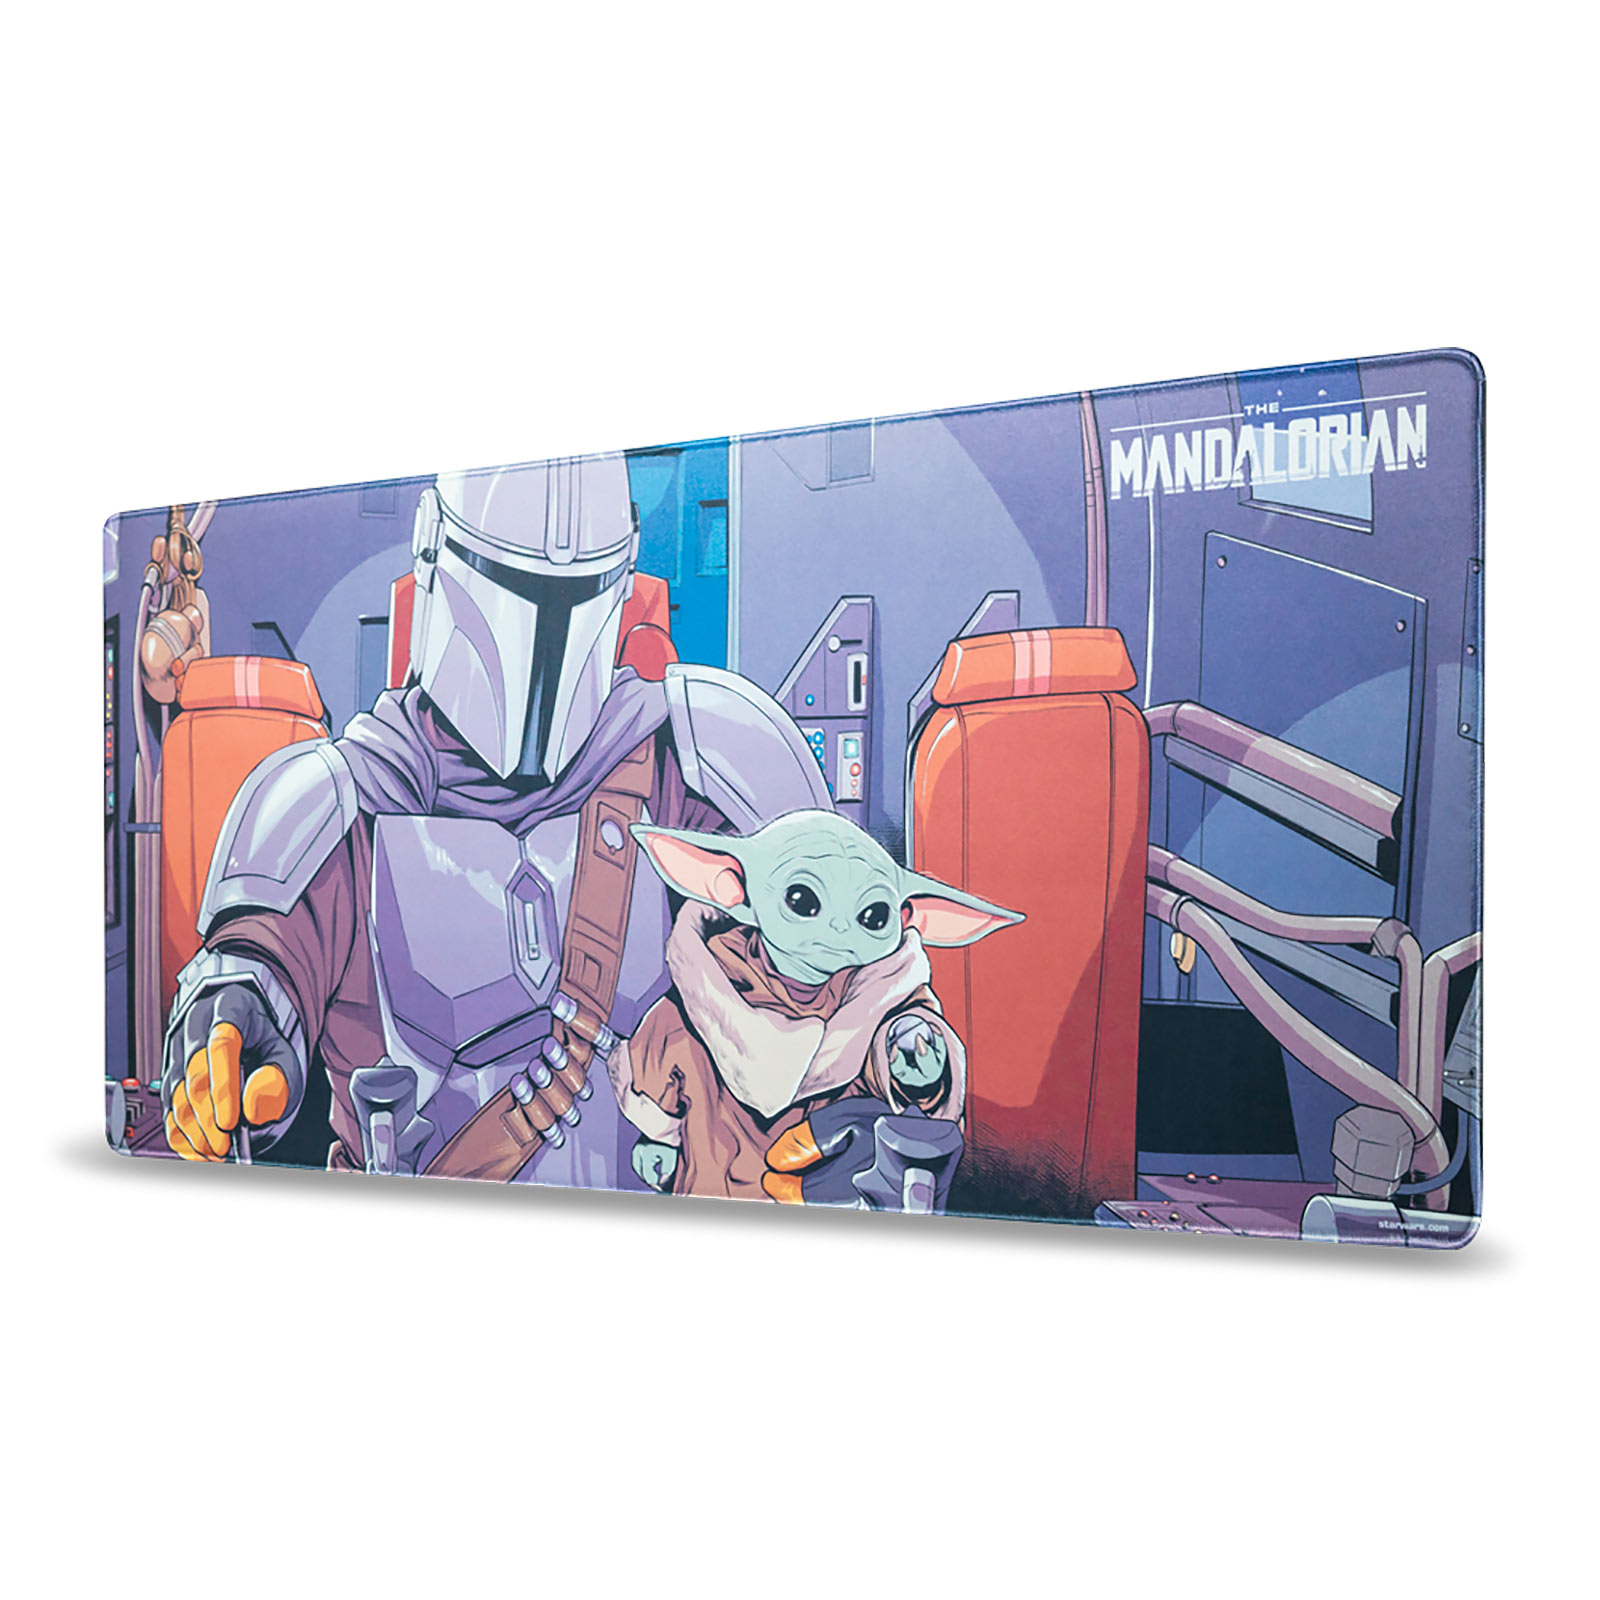 The Mandalorian & Grogu Mousepad - Star Wars